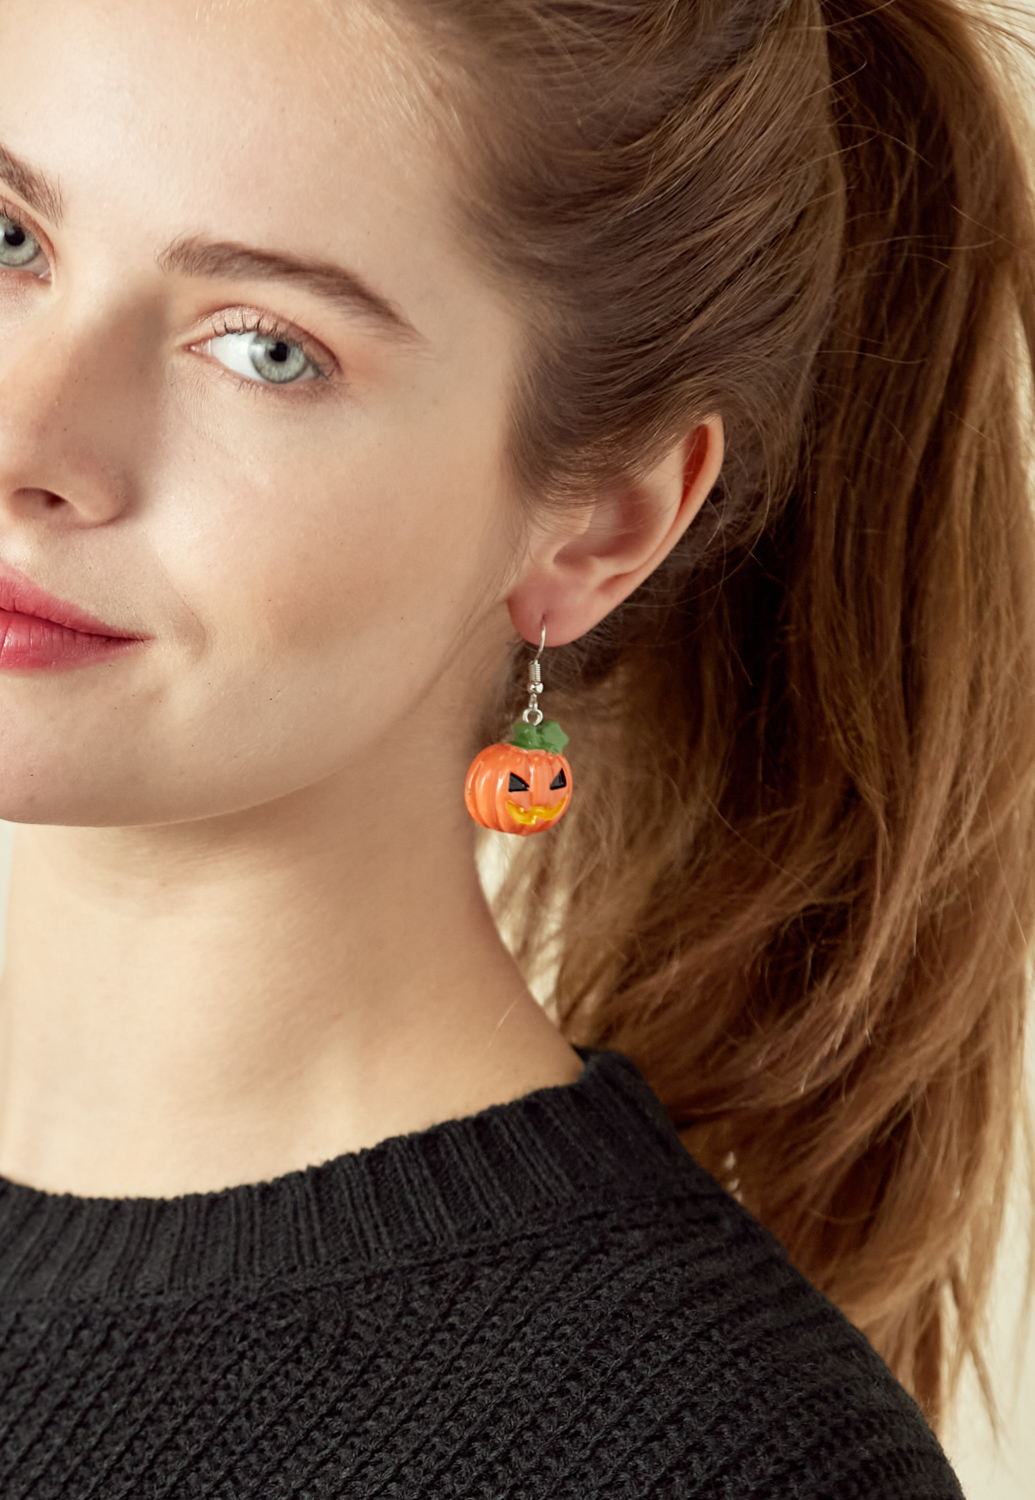 Halloween Pumpkin Earrings 